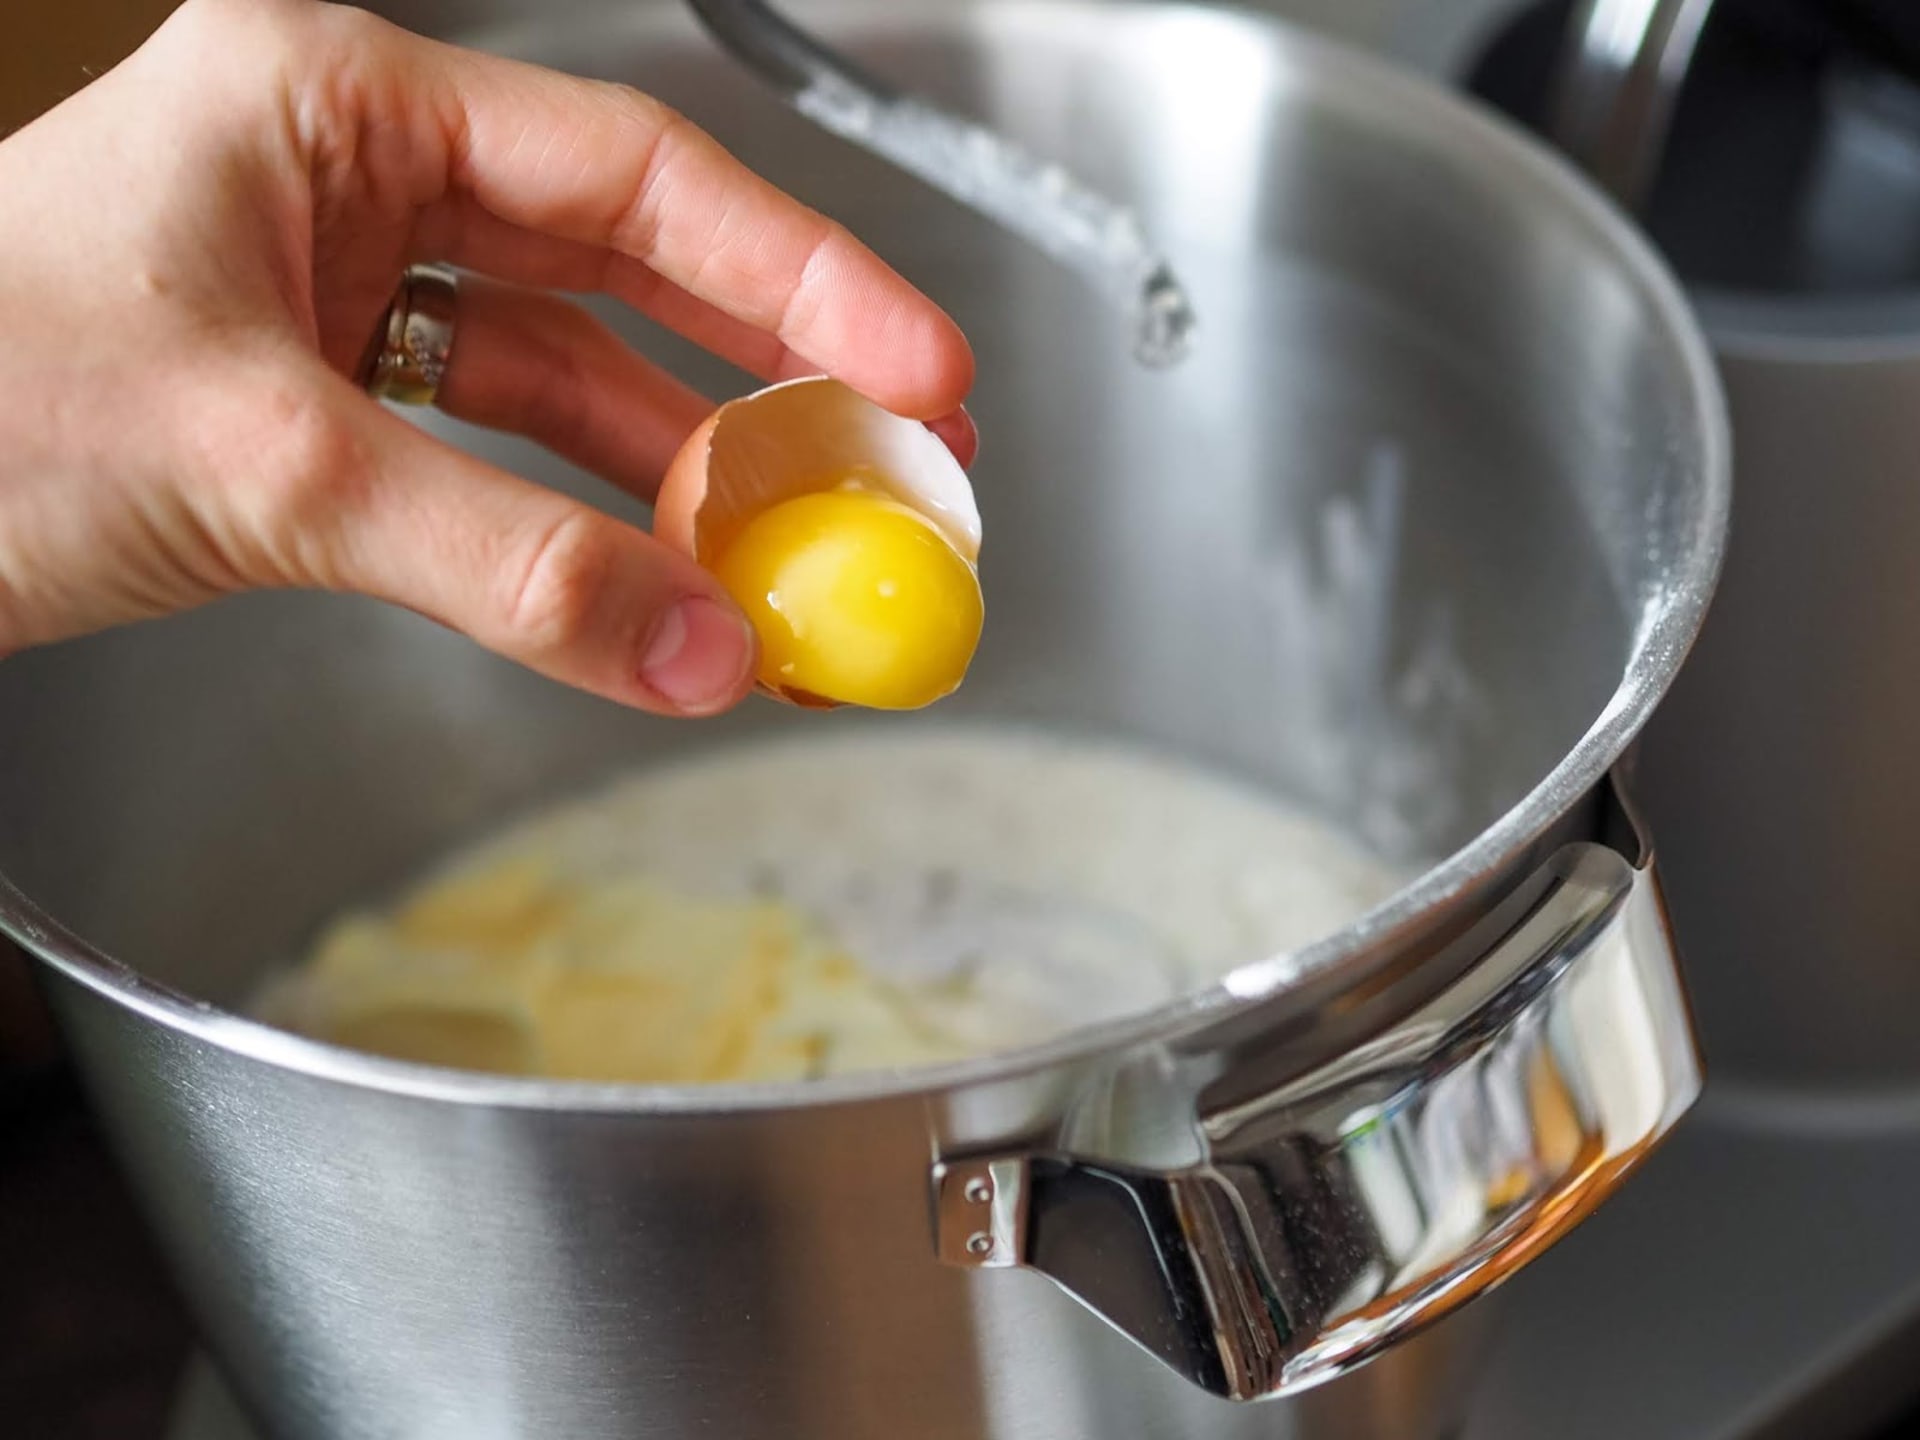 Velikonoční zajíček - jednoduchý recept z třeného těsta s jogurtem